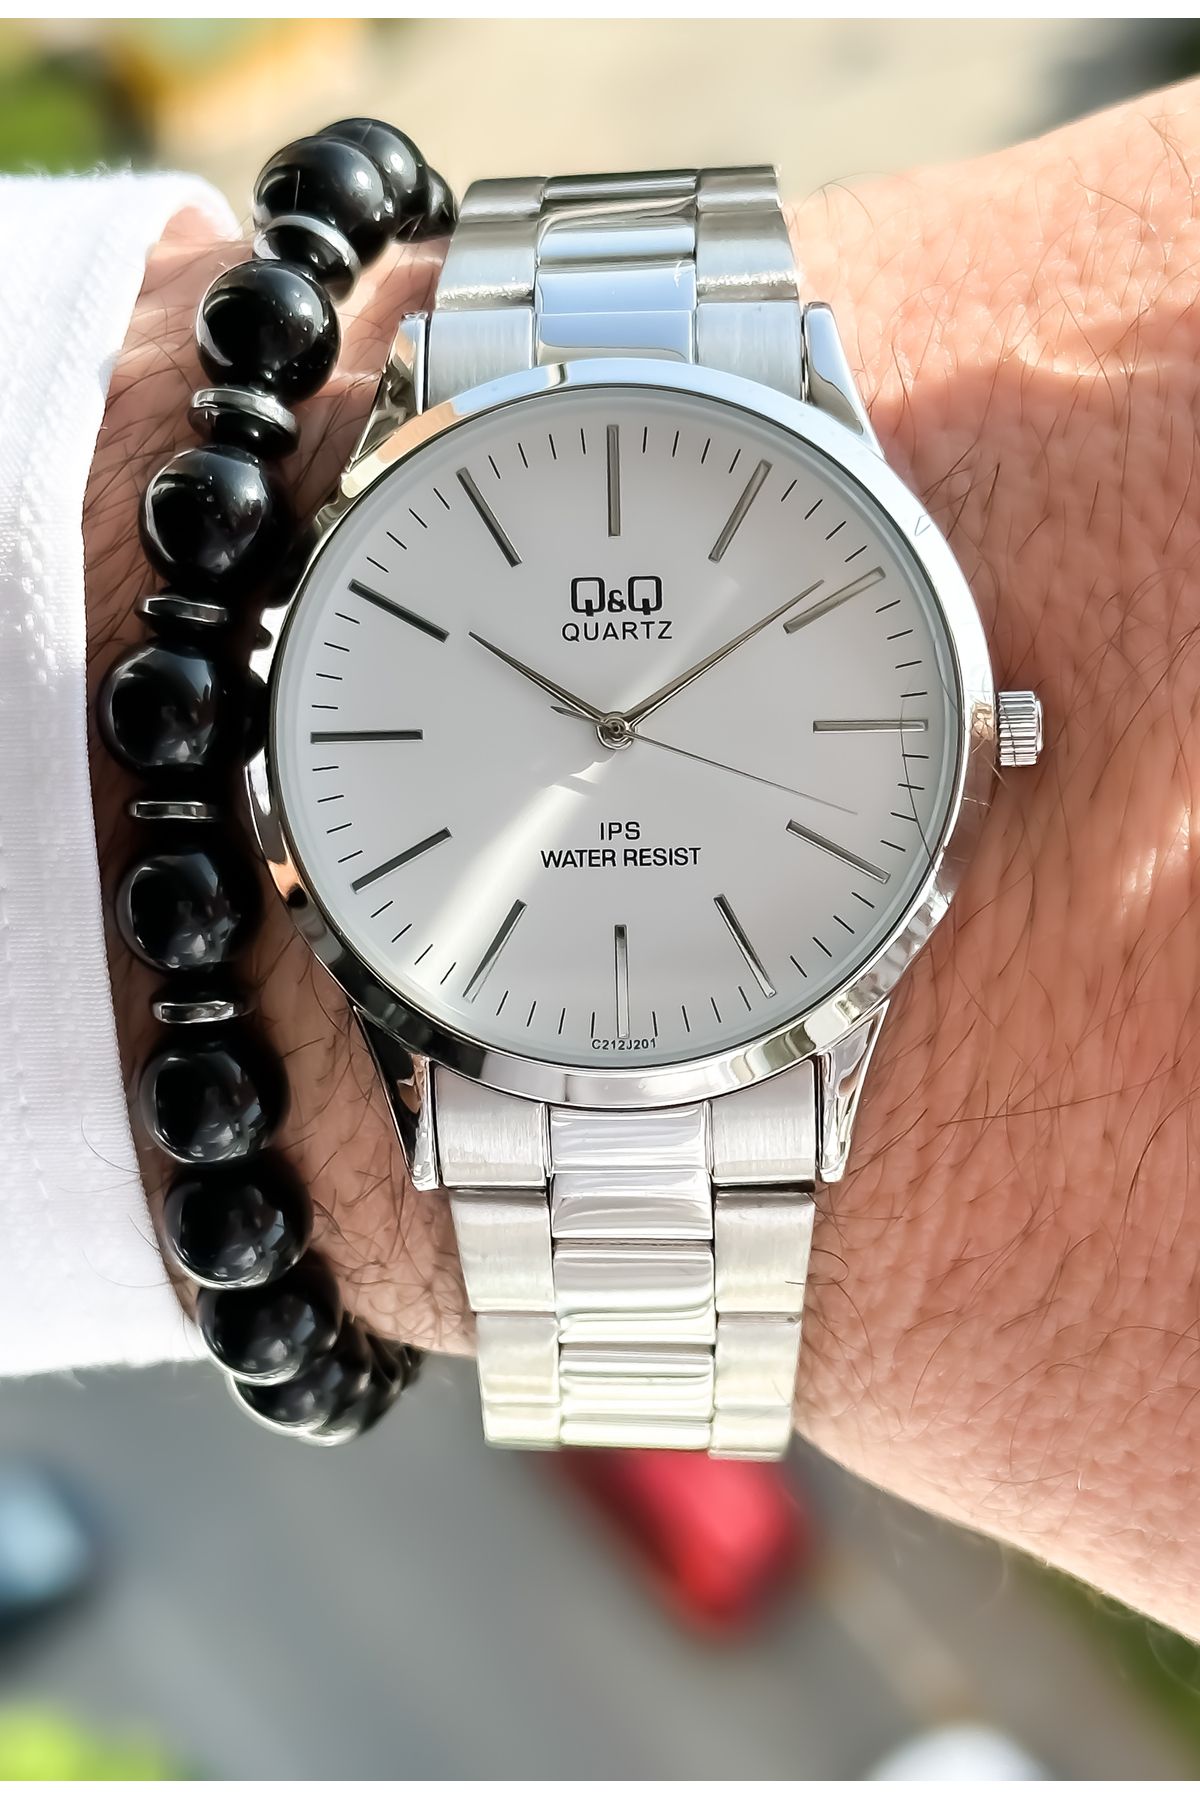 q&q quartz watch price